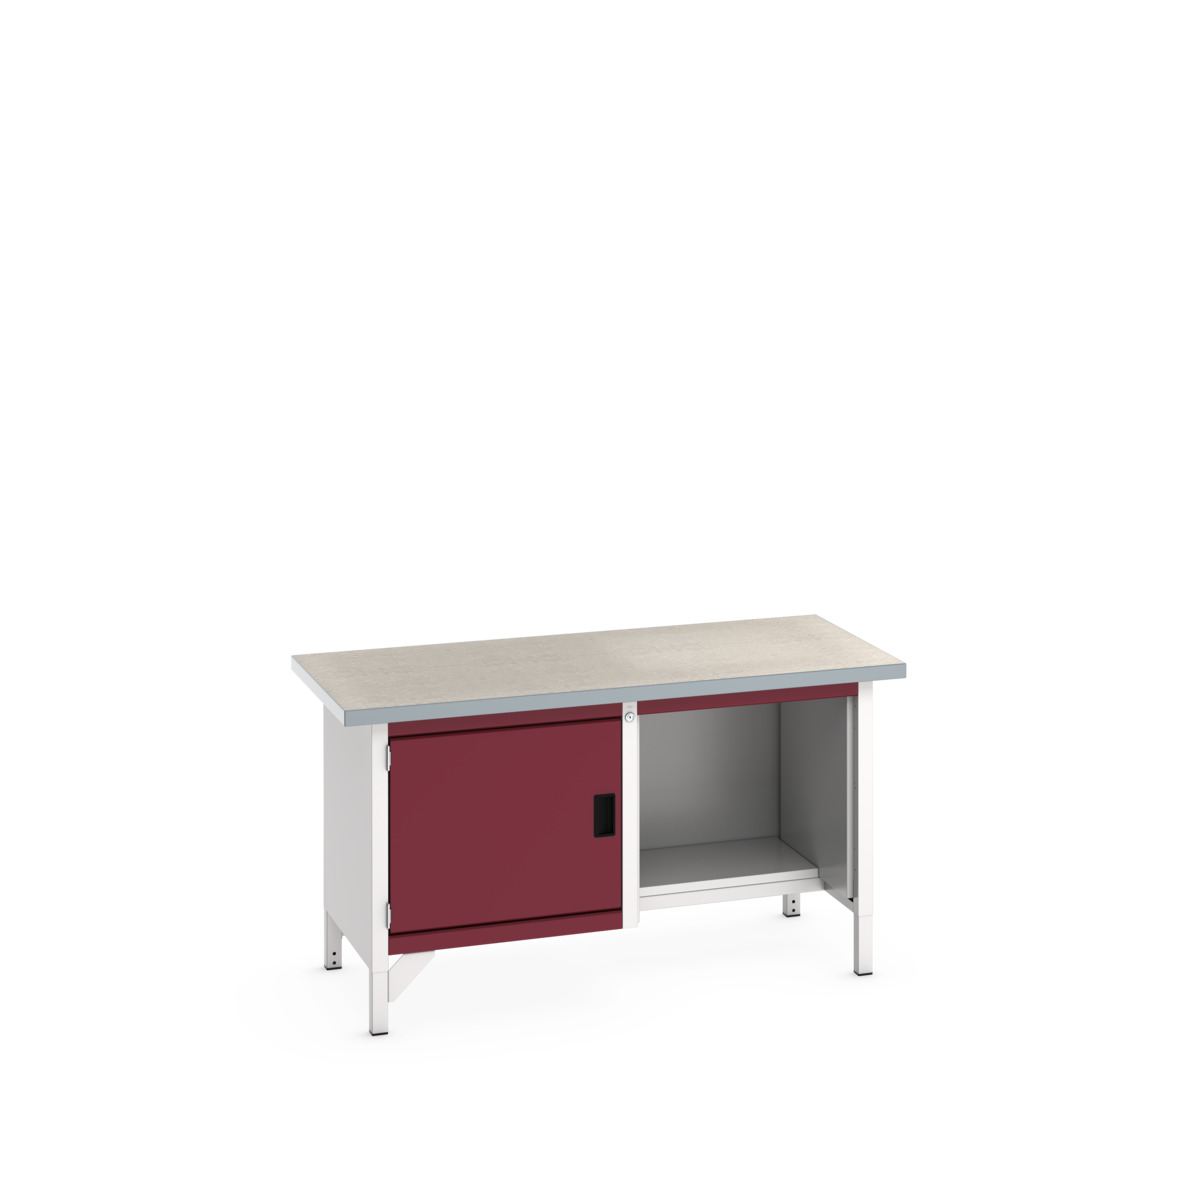 41002036.24V - cubio storage bench (lino)